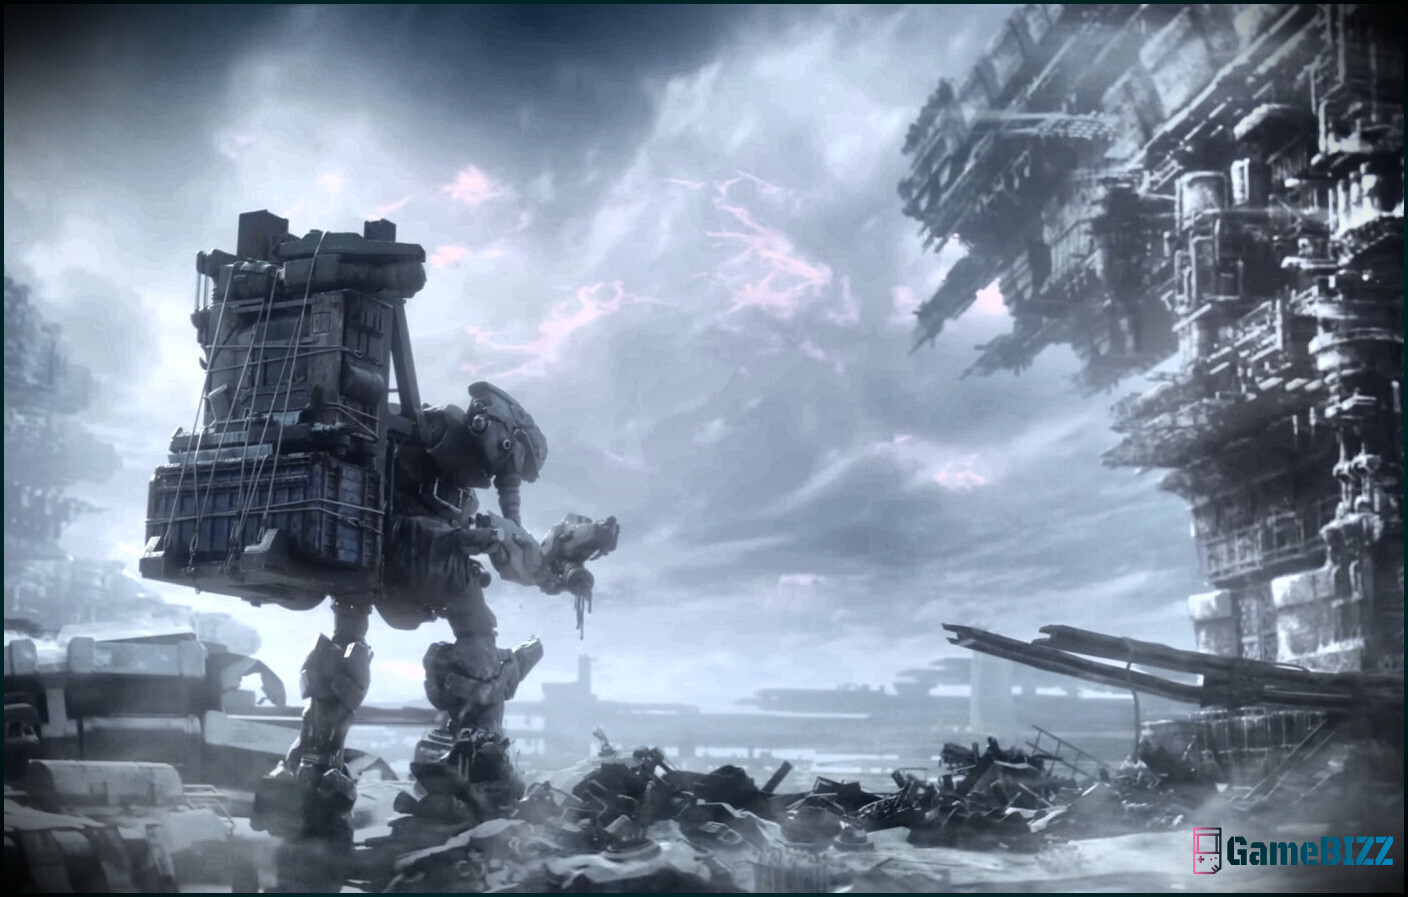 Armored Core 6 enthüllt ersten Gameplay-Trailer, erscheint am 25. August